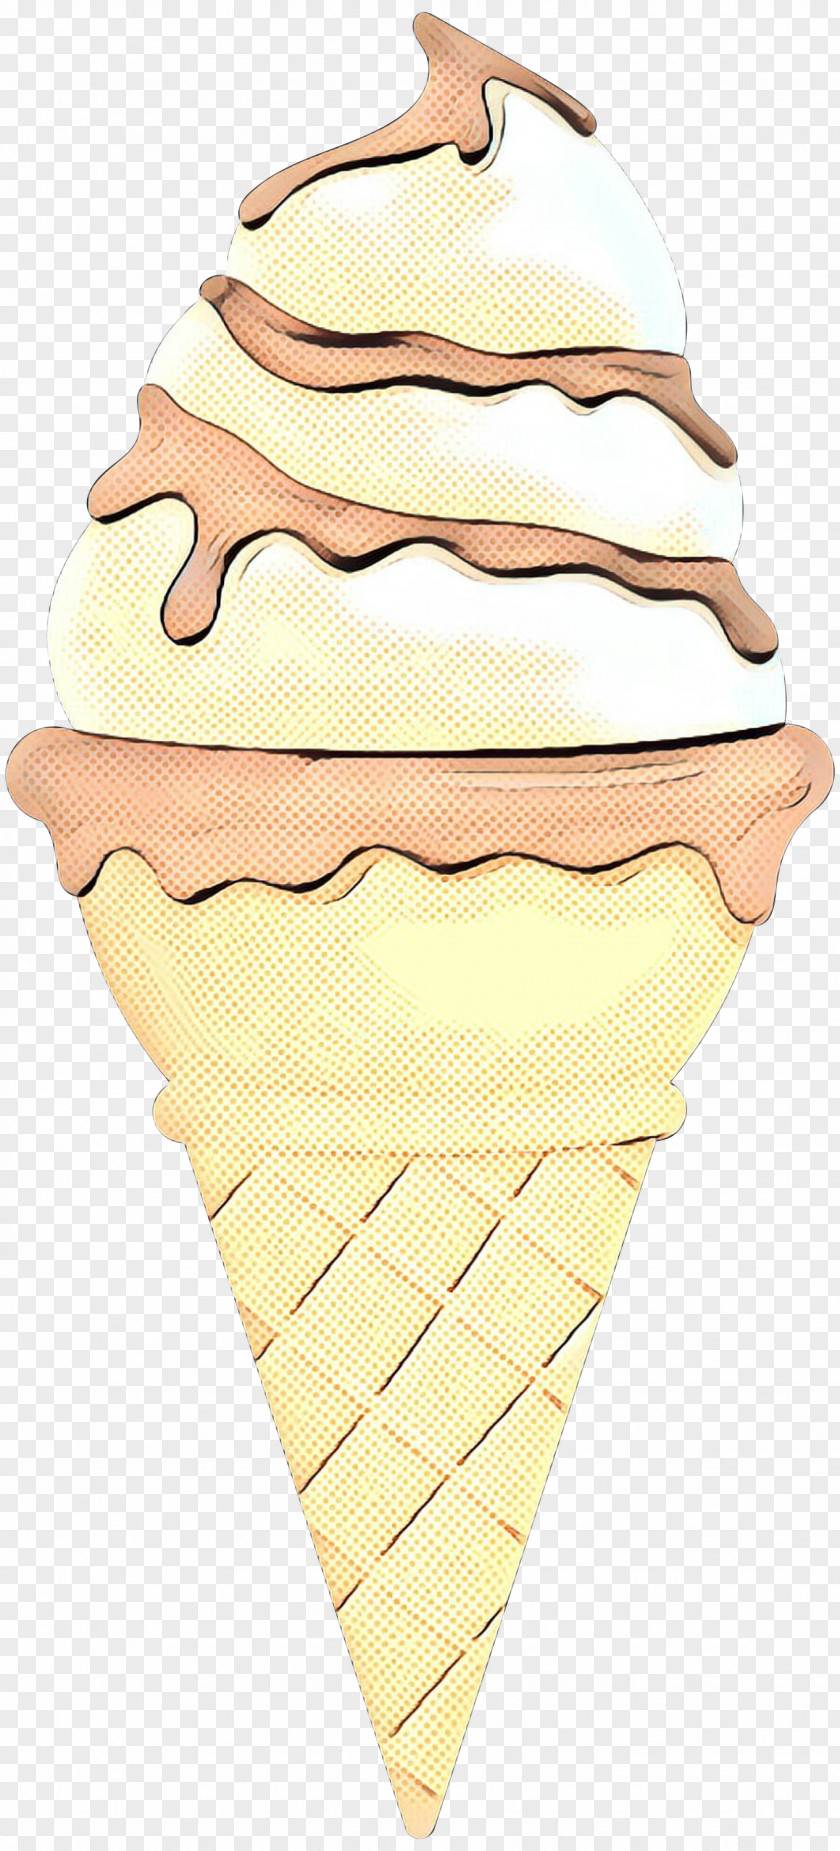 Ice Cream Cones PNG